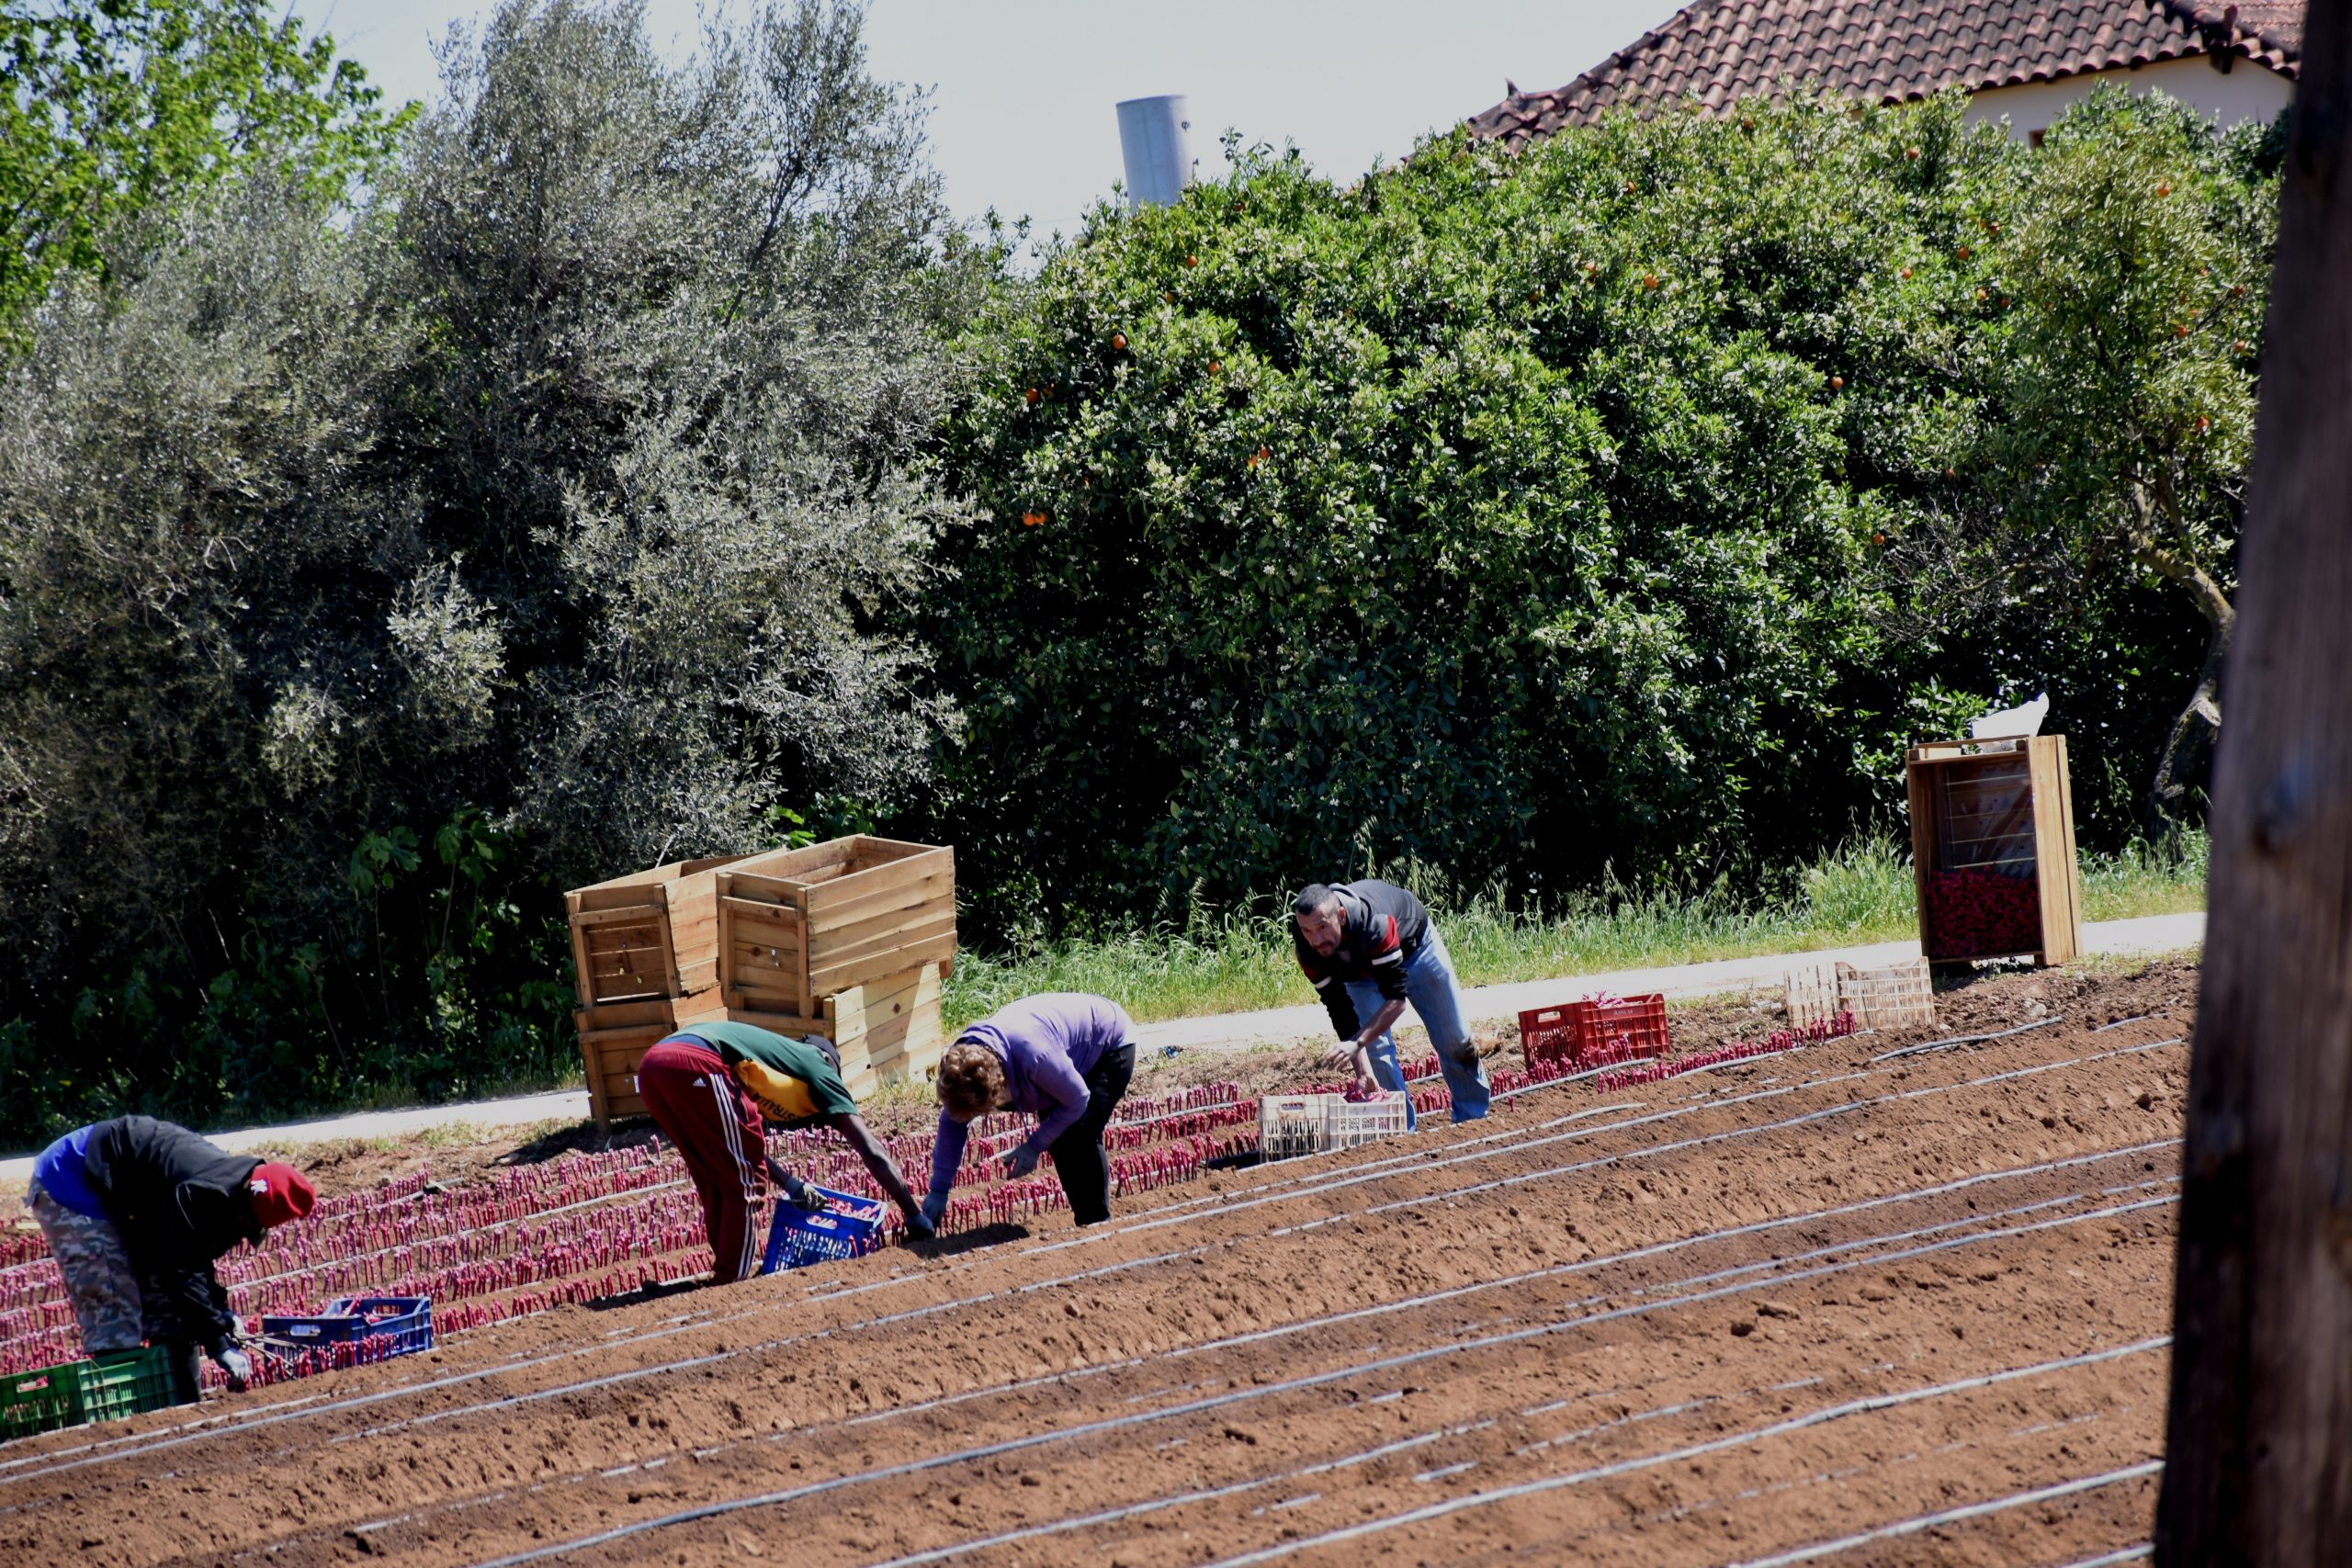 Εργάτες γης – Παράταση προσωρινής απασχόλησης για επιπλέον 90 ημέρες